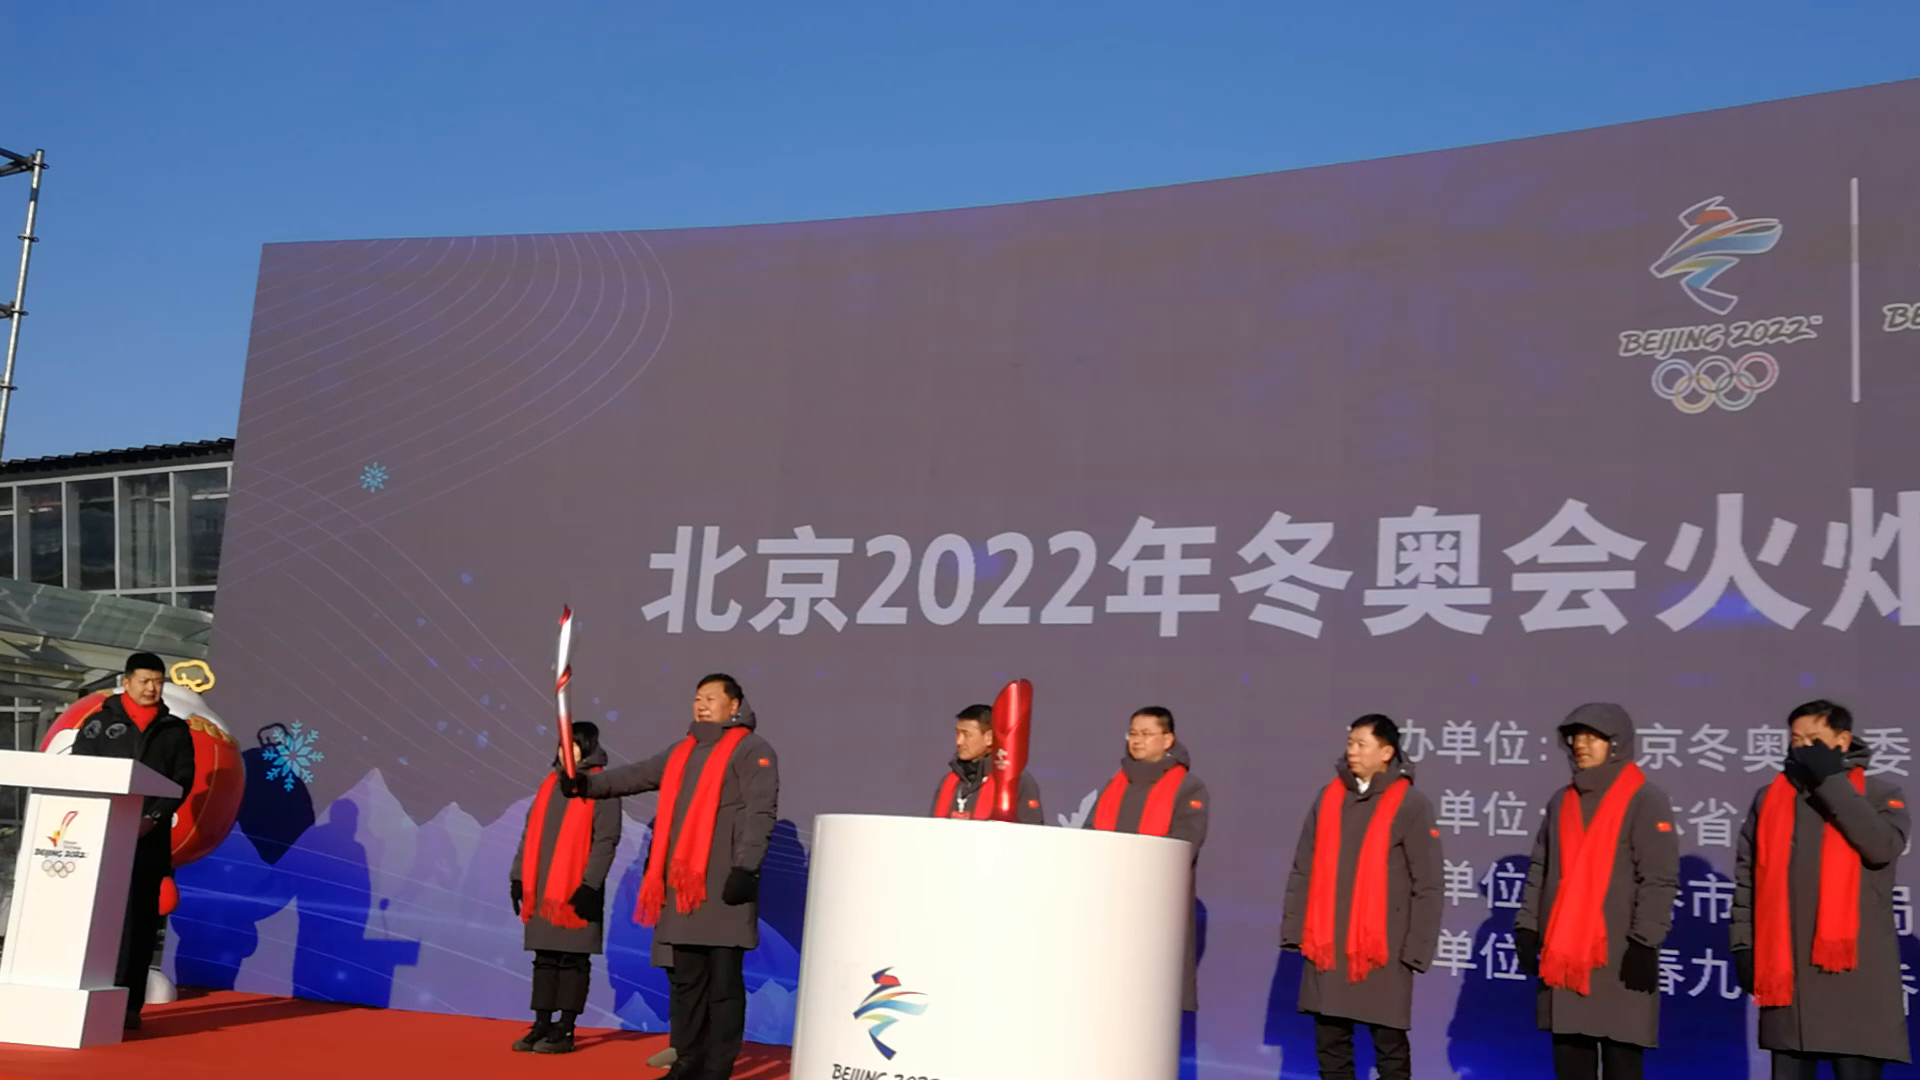 北京2022年冬奥会火炬展示活动长春站举行